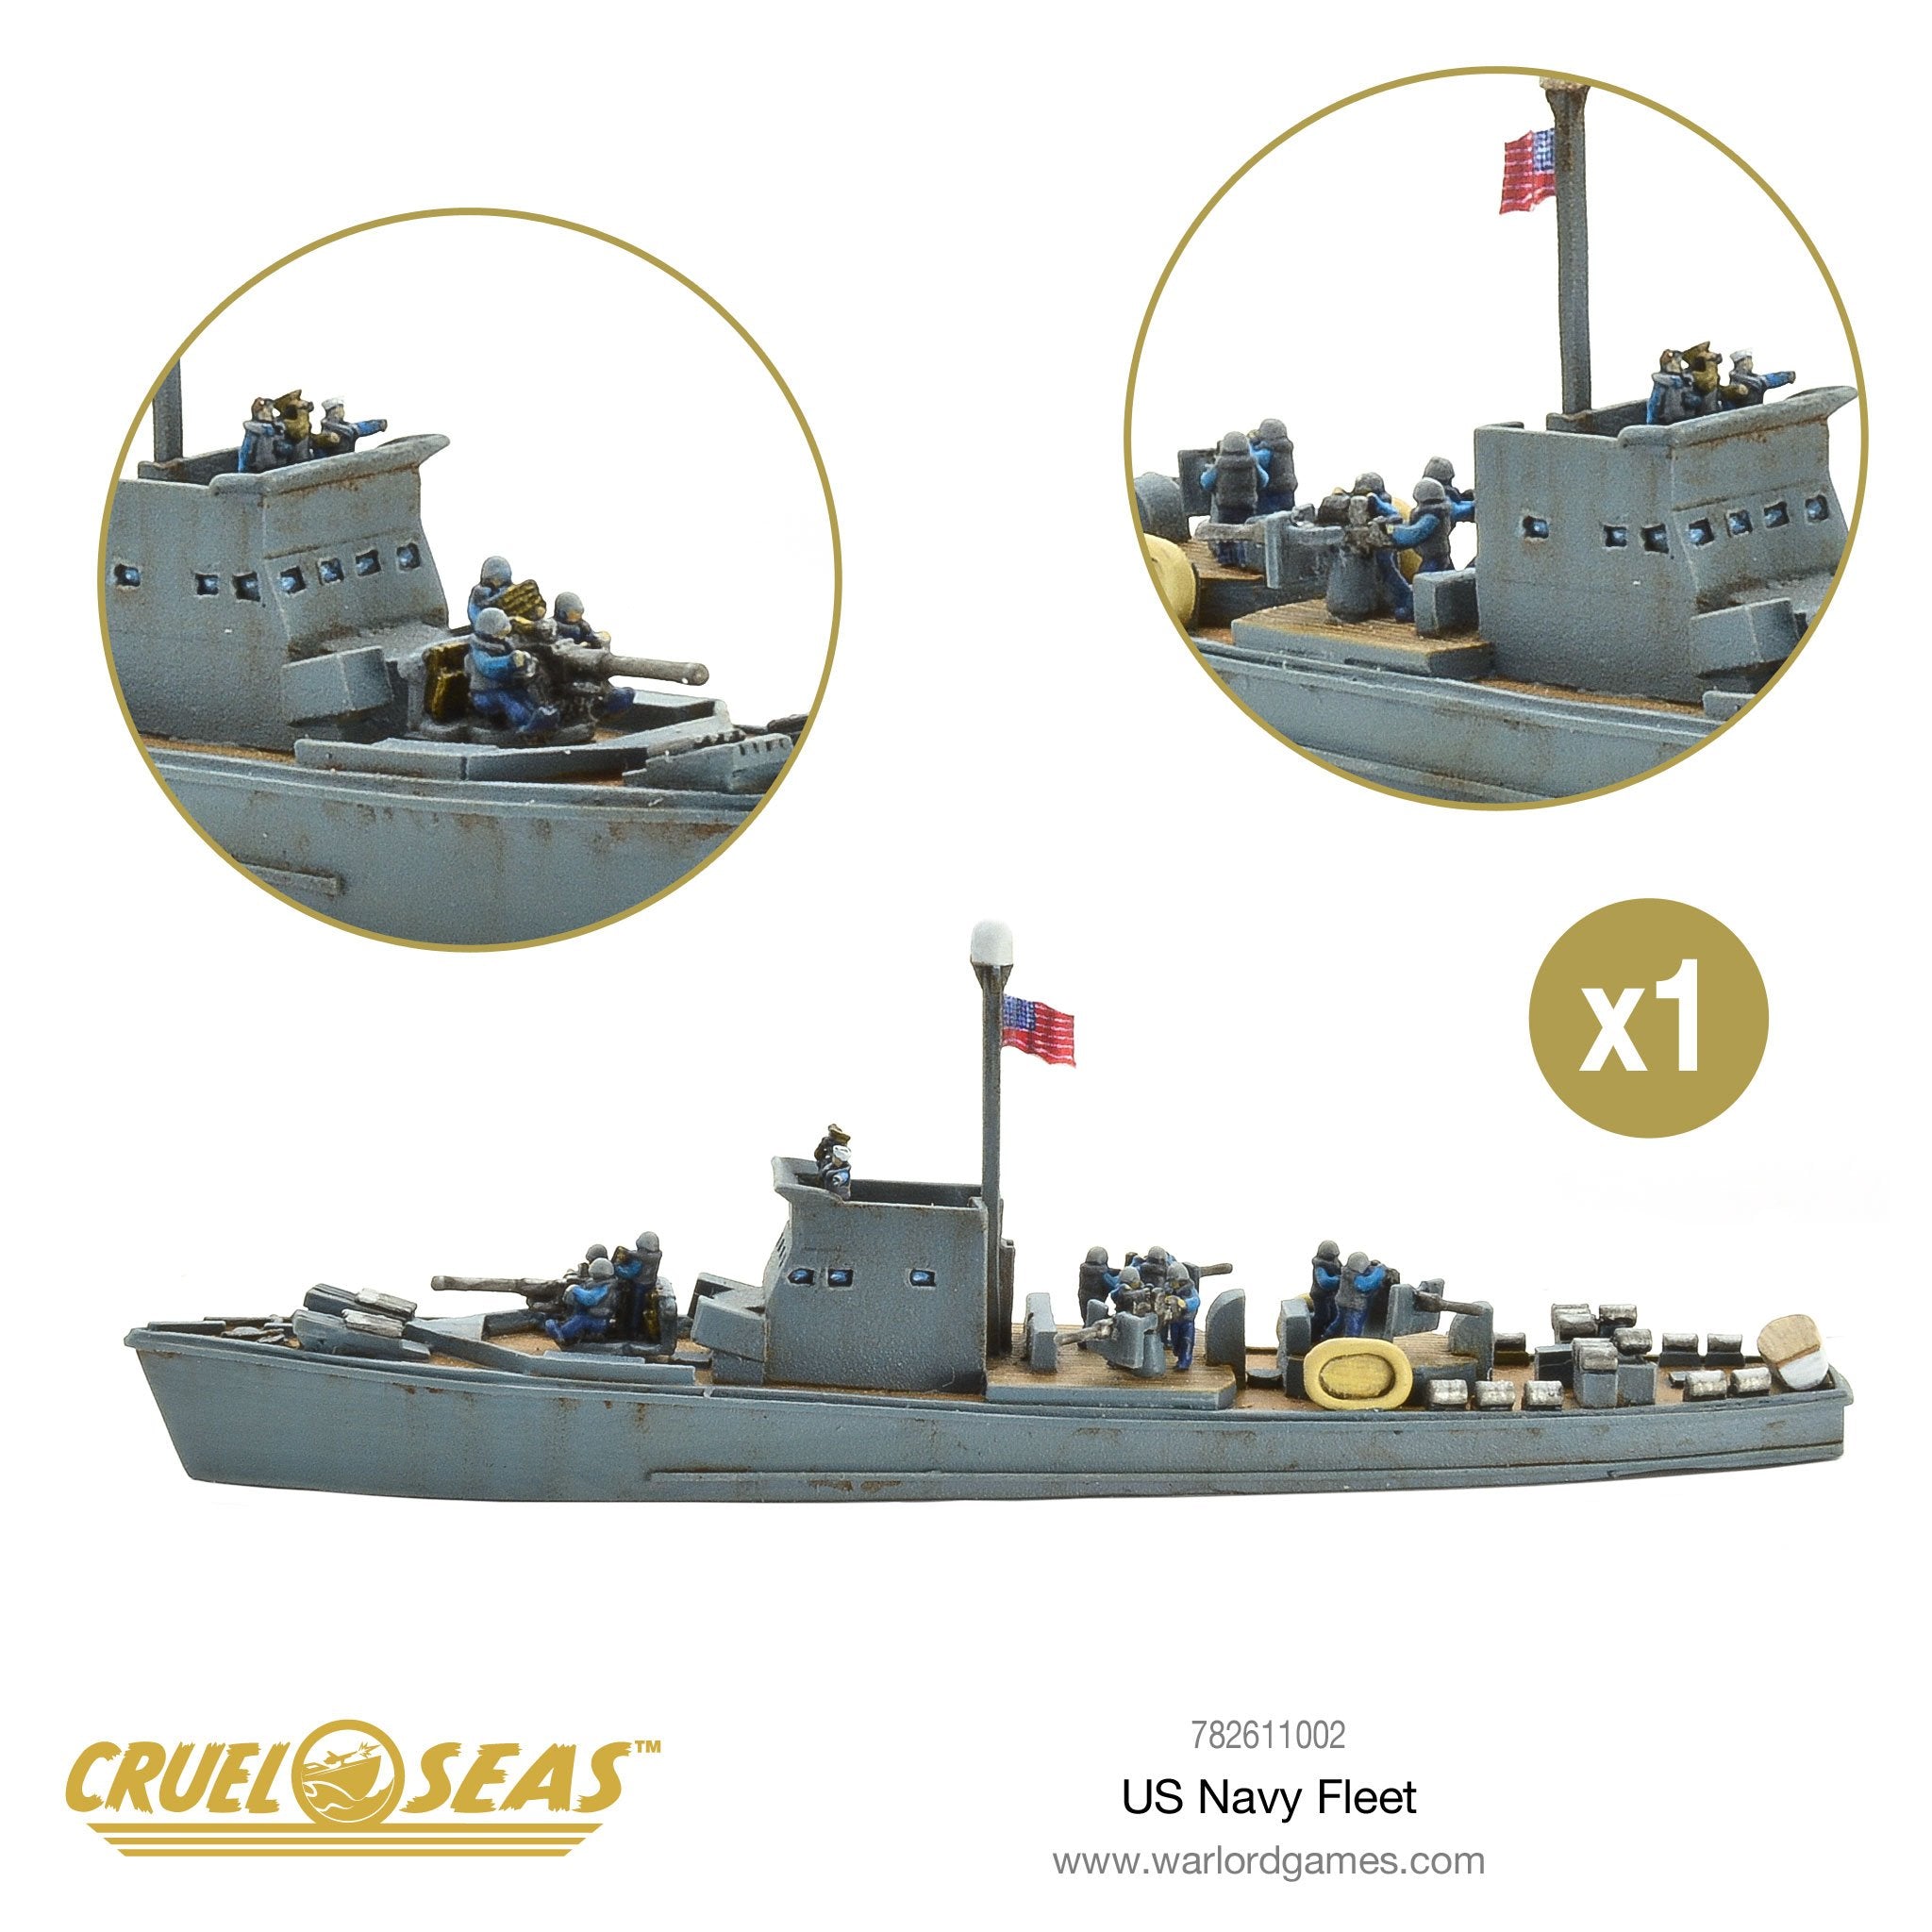 US Navy Fleet